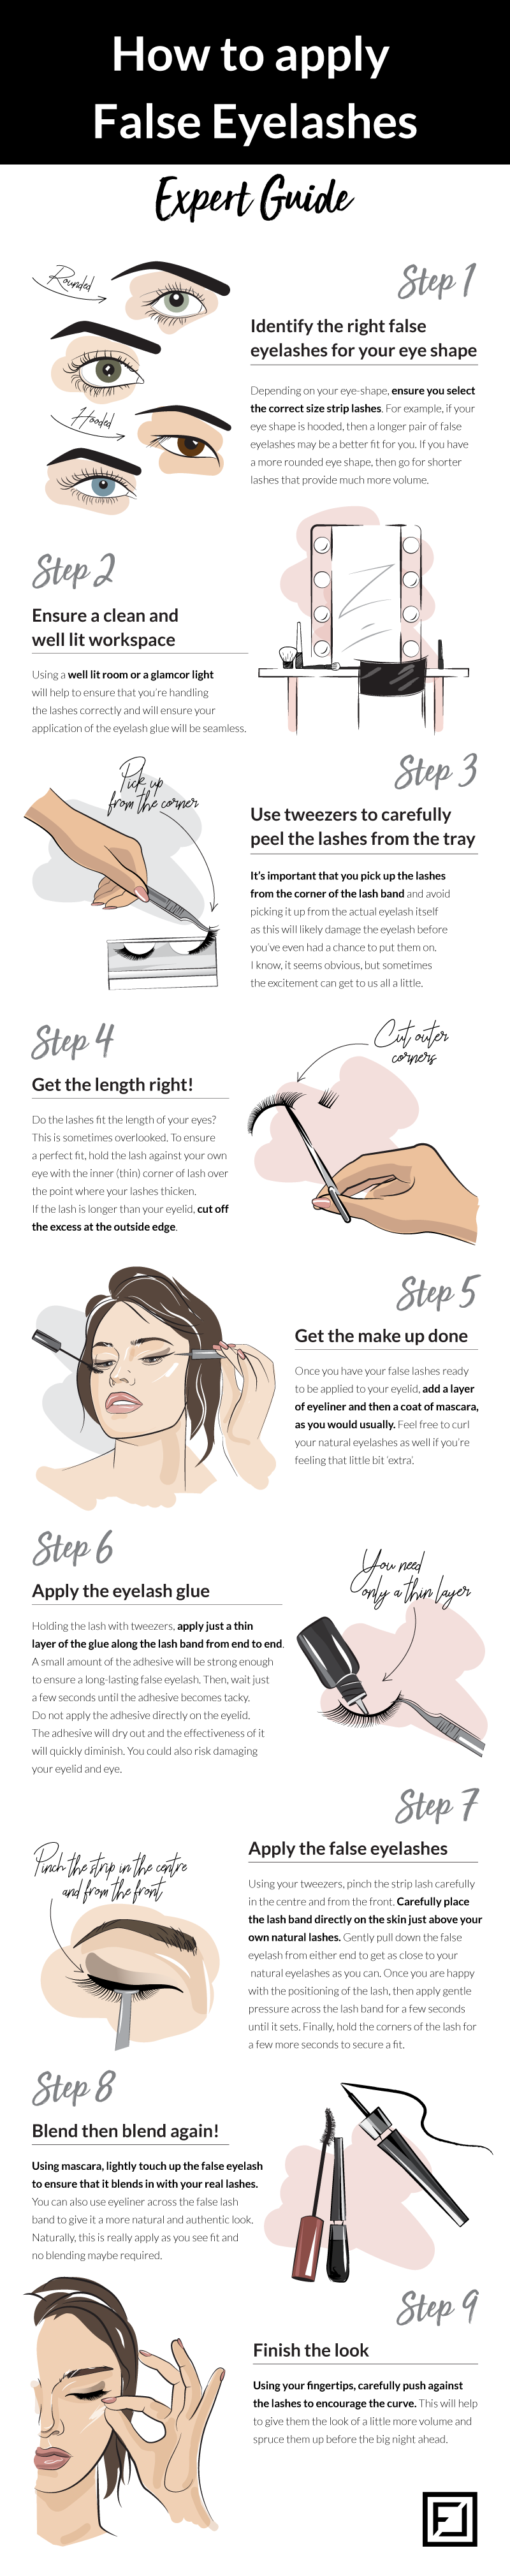 applying false eyelashes infographic